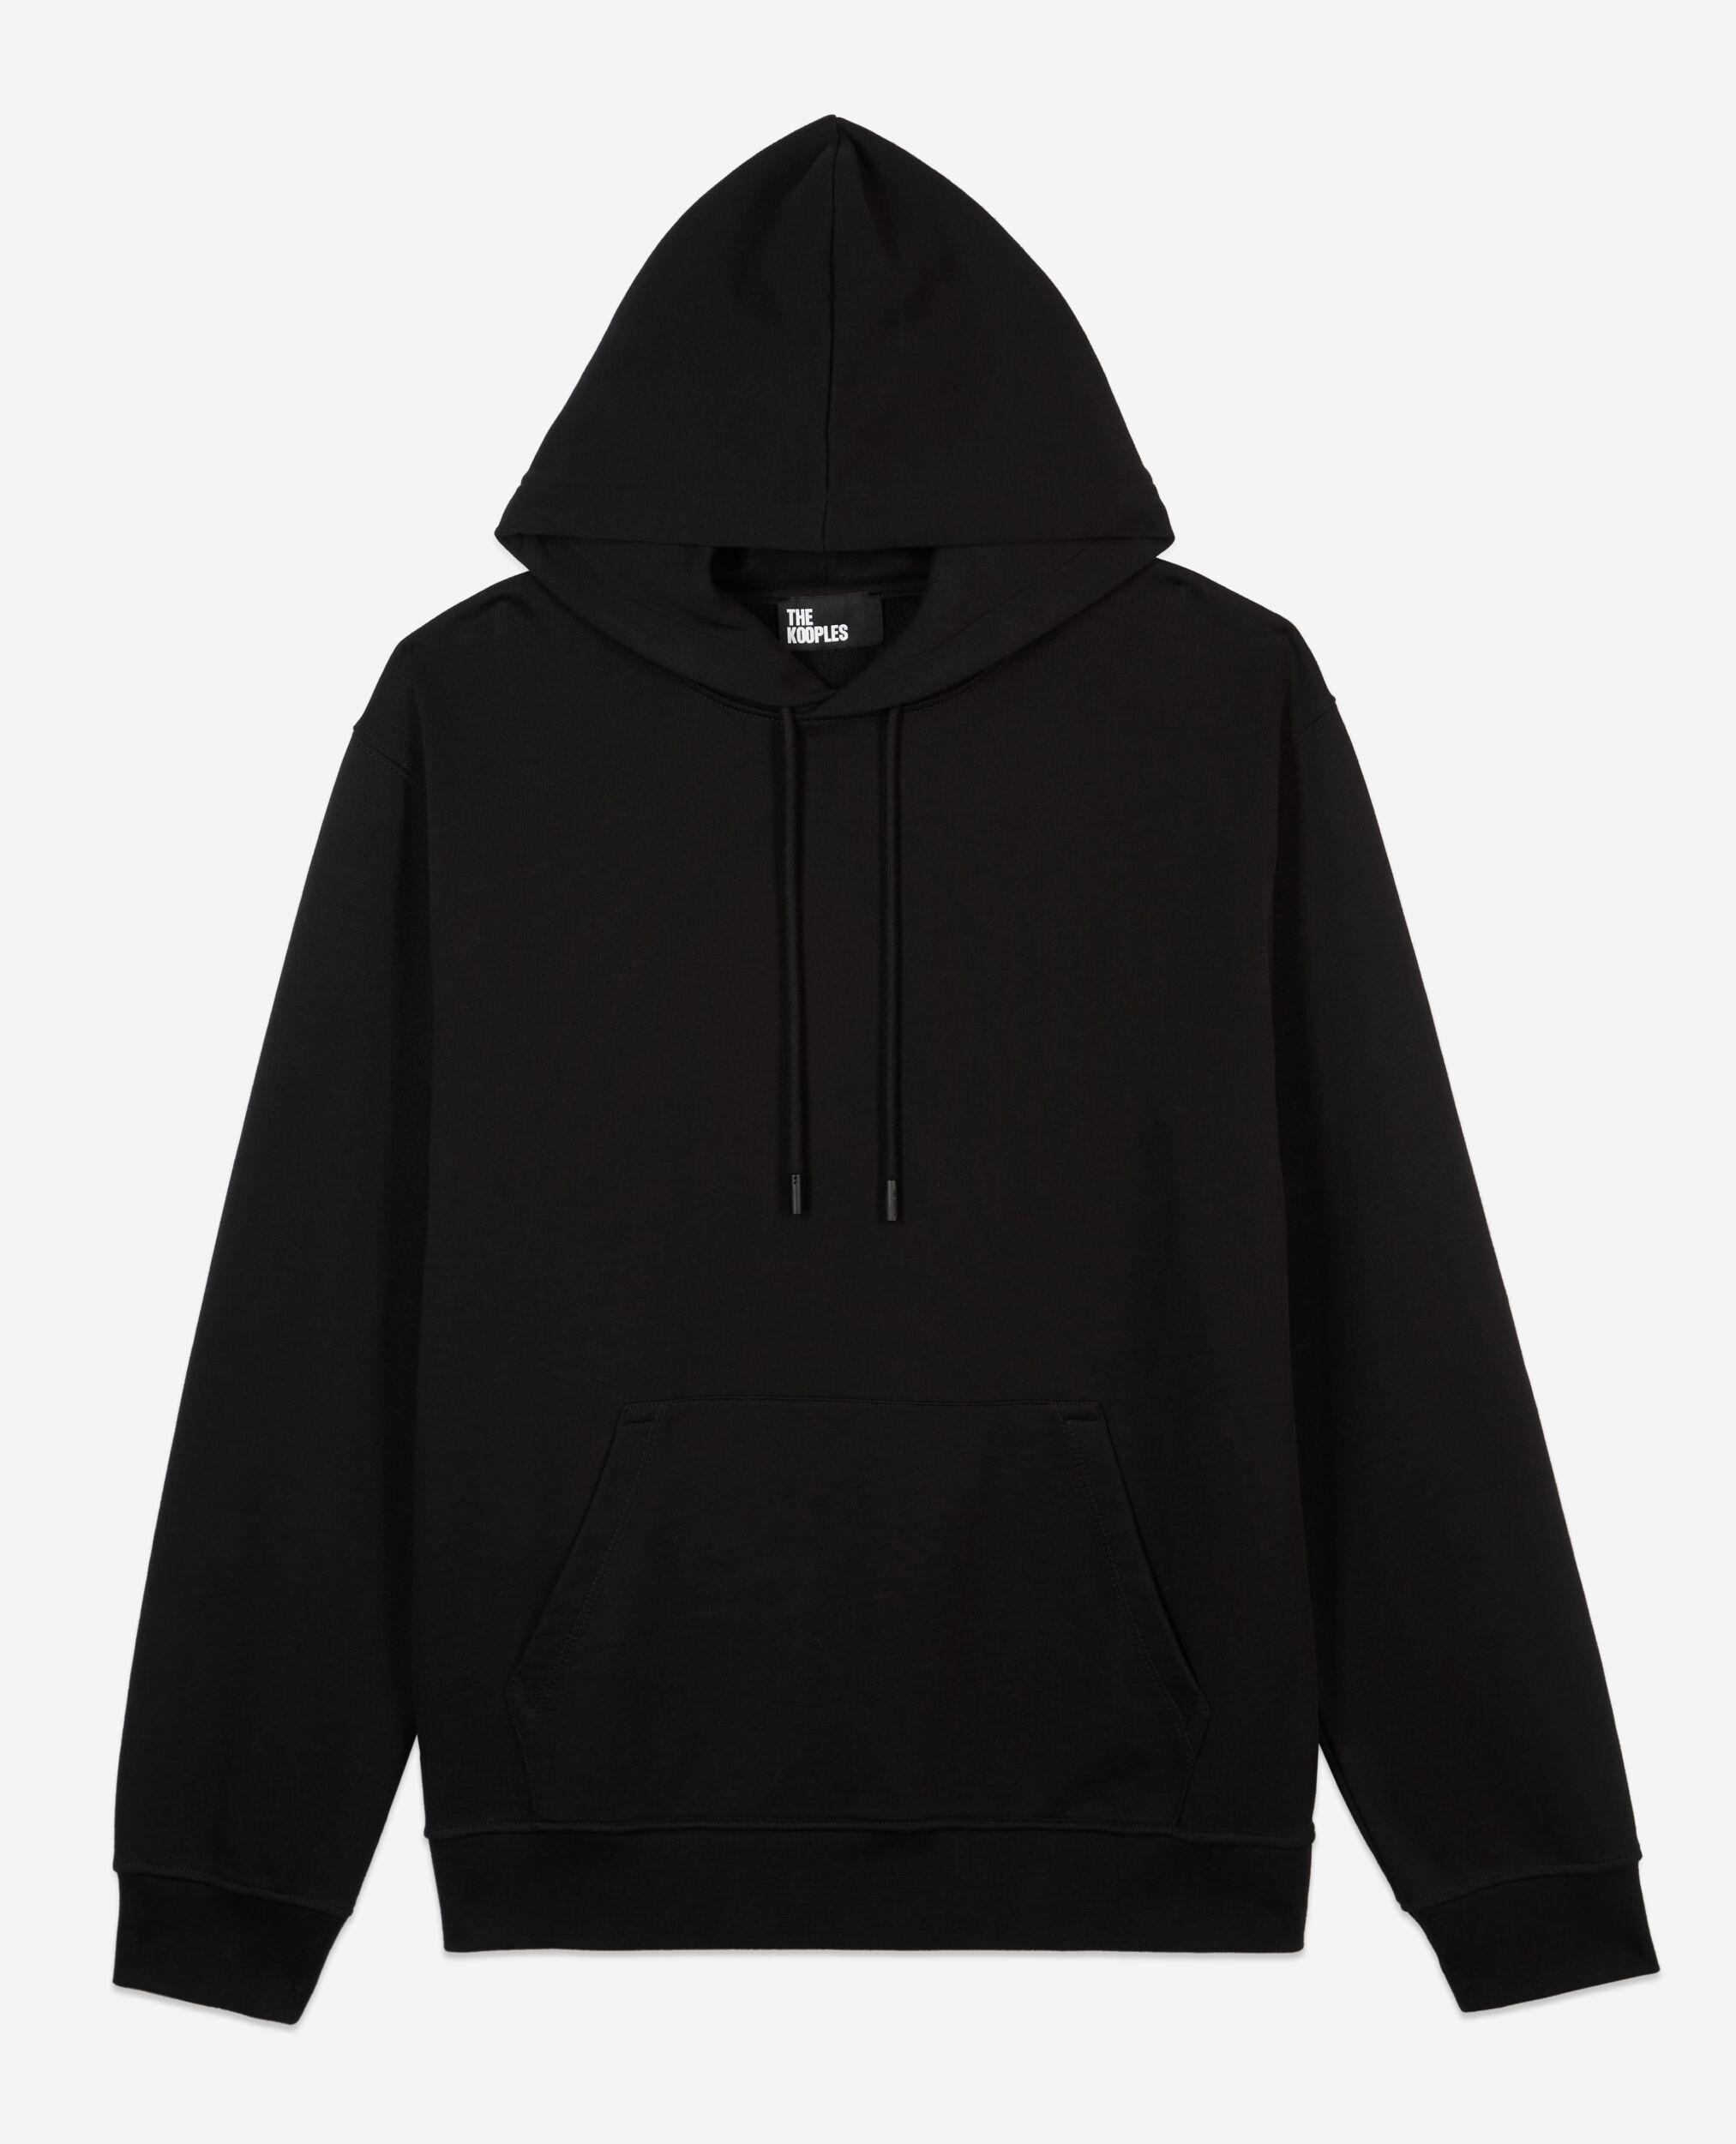 Black hoodie with Flower skull serigraphy, BLACK, hi-res image number null